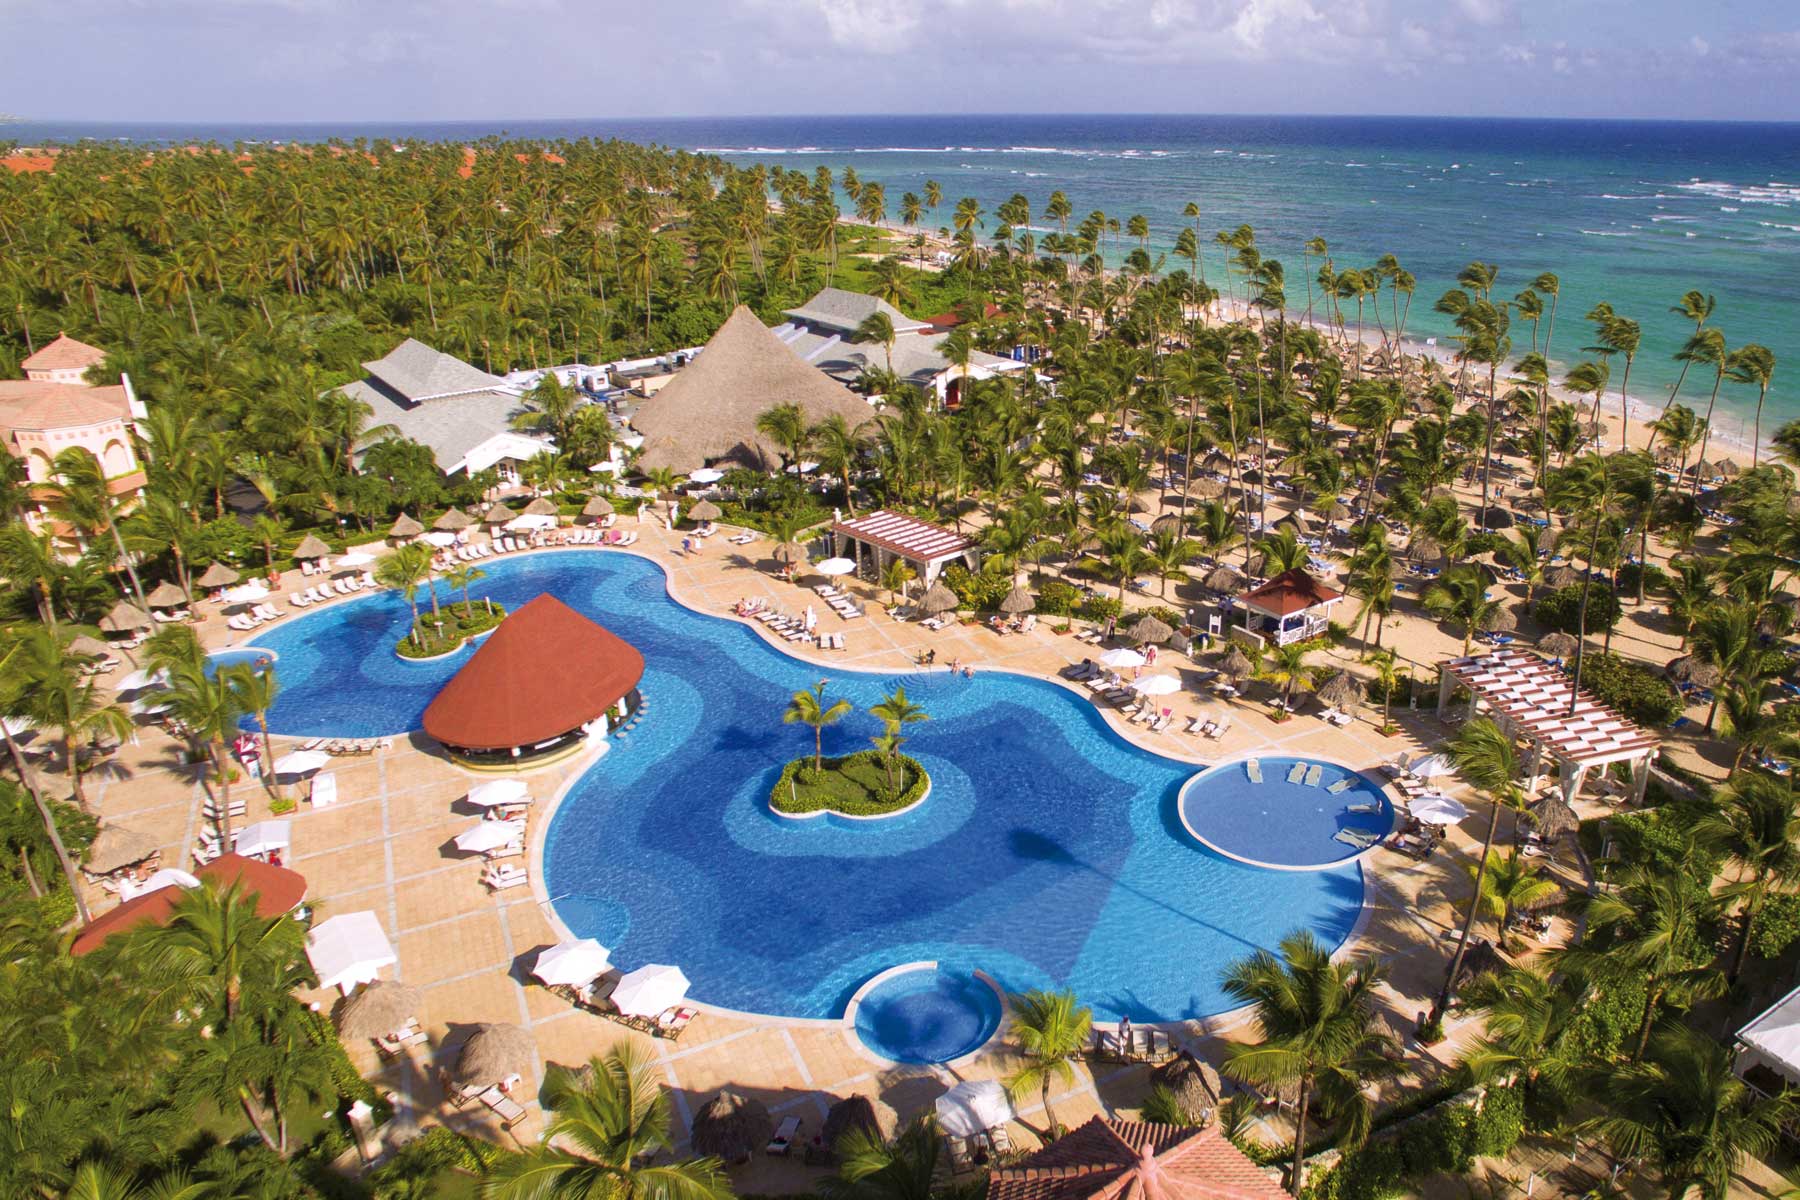 Bahia Principe largest resort in Punta Cana. Photo Credit Bahia Principe